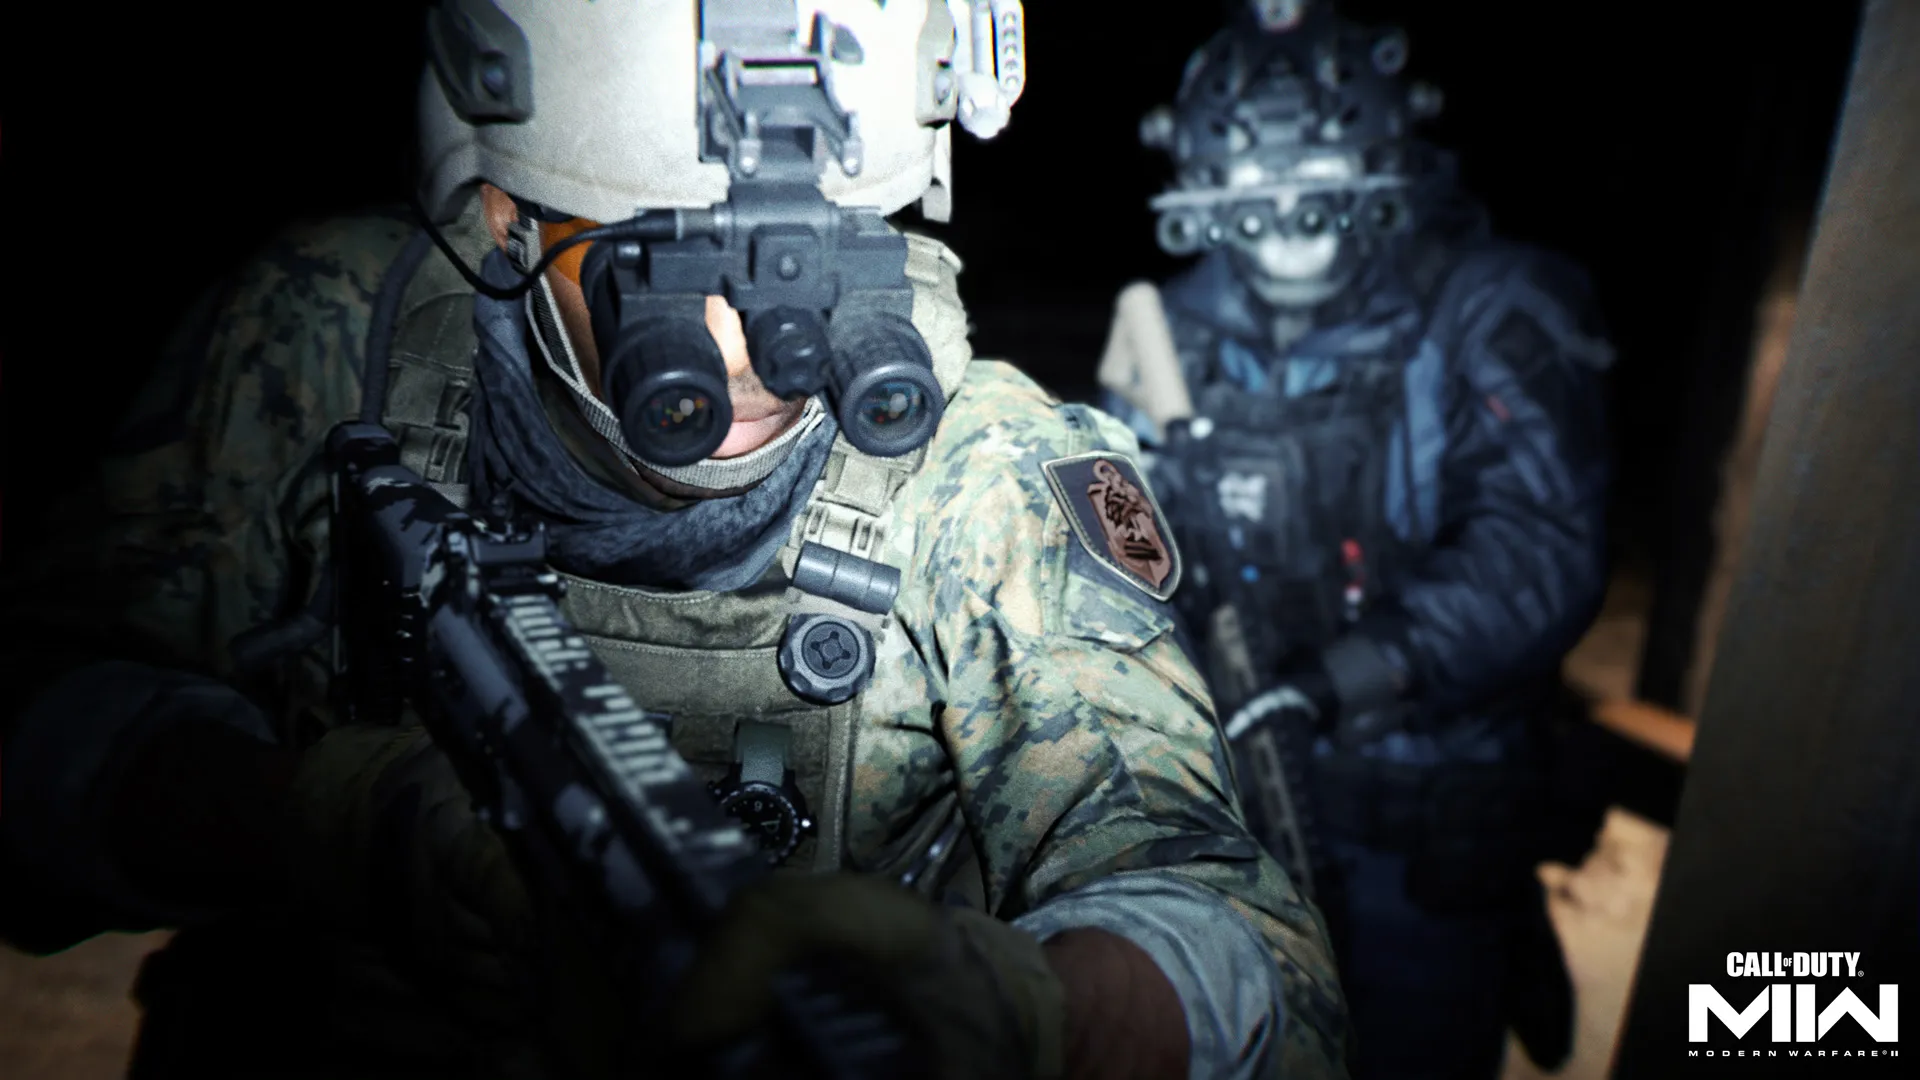 Modern Warfare 2 multiplayer beta: Codes, start time, platform